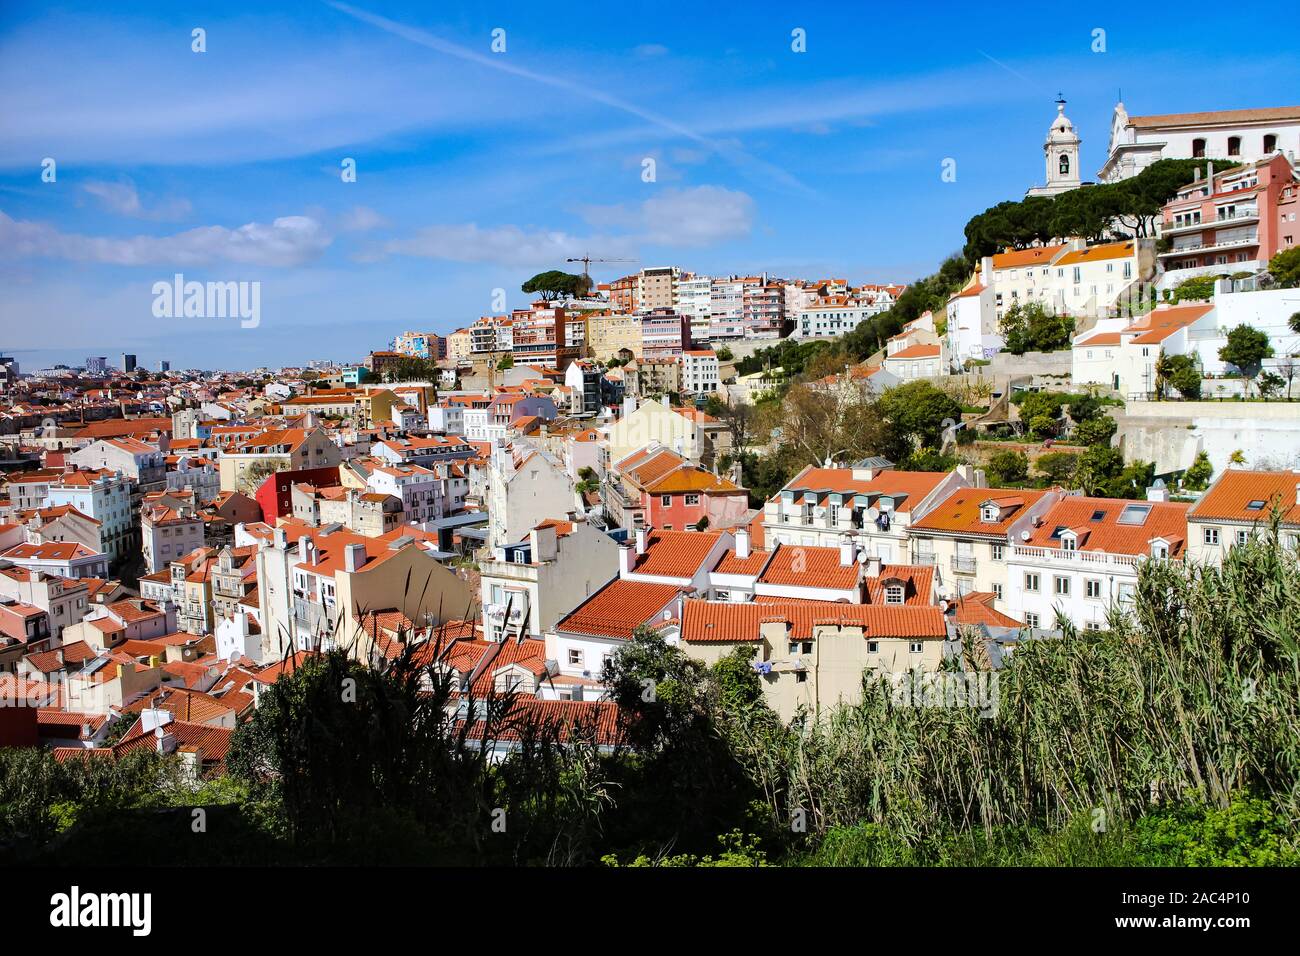 Hügelige Stadtbild von Lissabon, die Hauptstadt Portugals, an einem sonnigen Tag im Frühling. Stockfoto